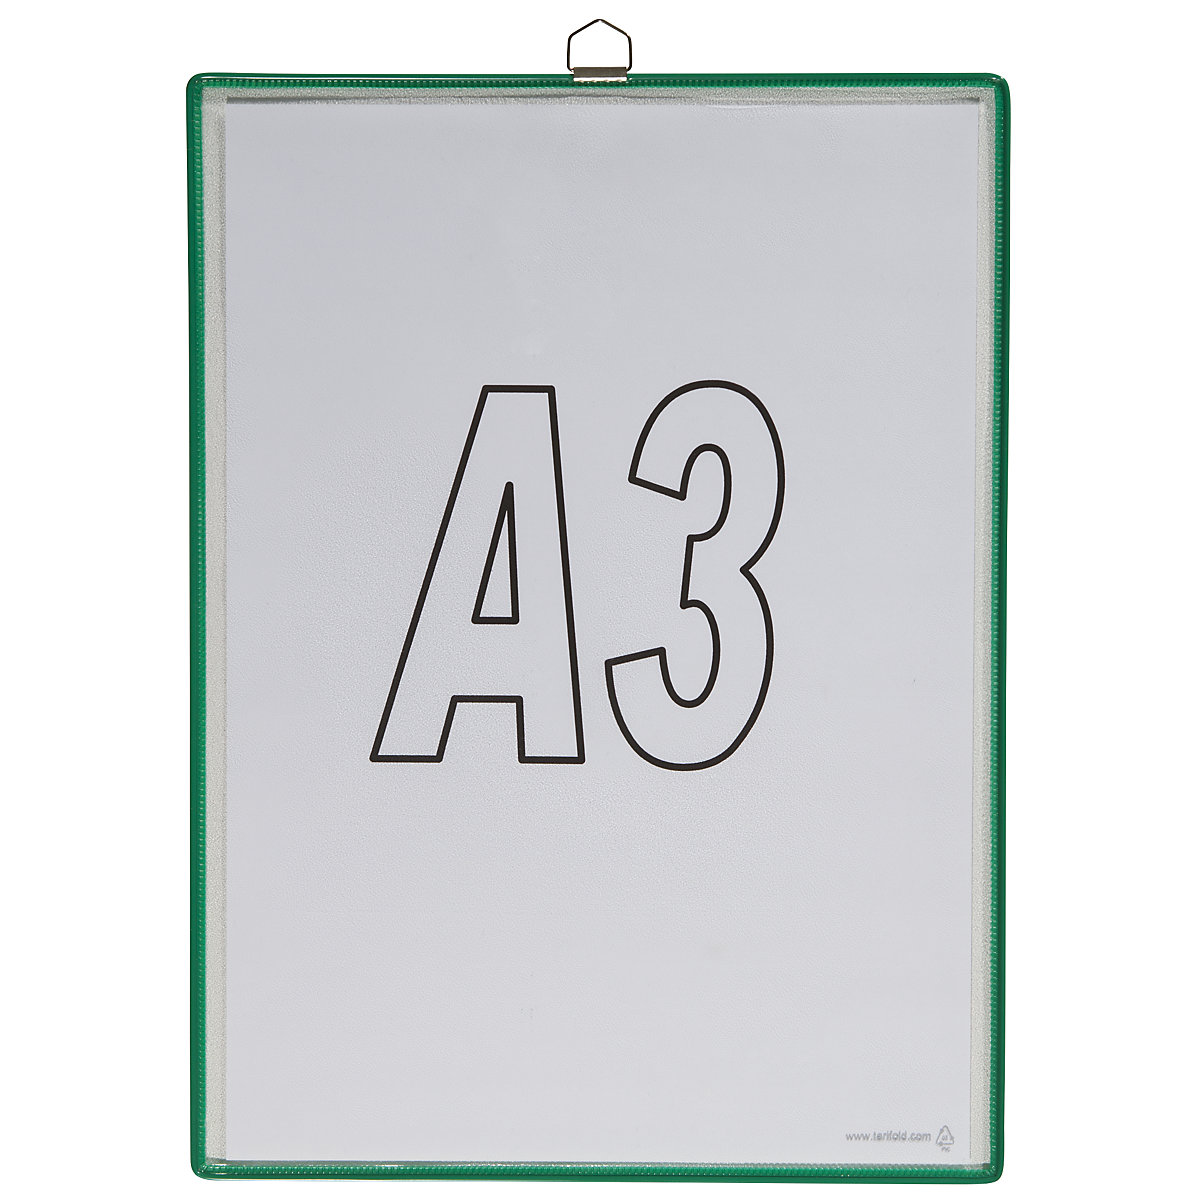 Pochette transparente à accrocher – Tarifold, pour format A3, coloris vert, lot de 10-3